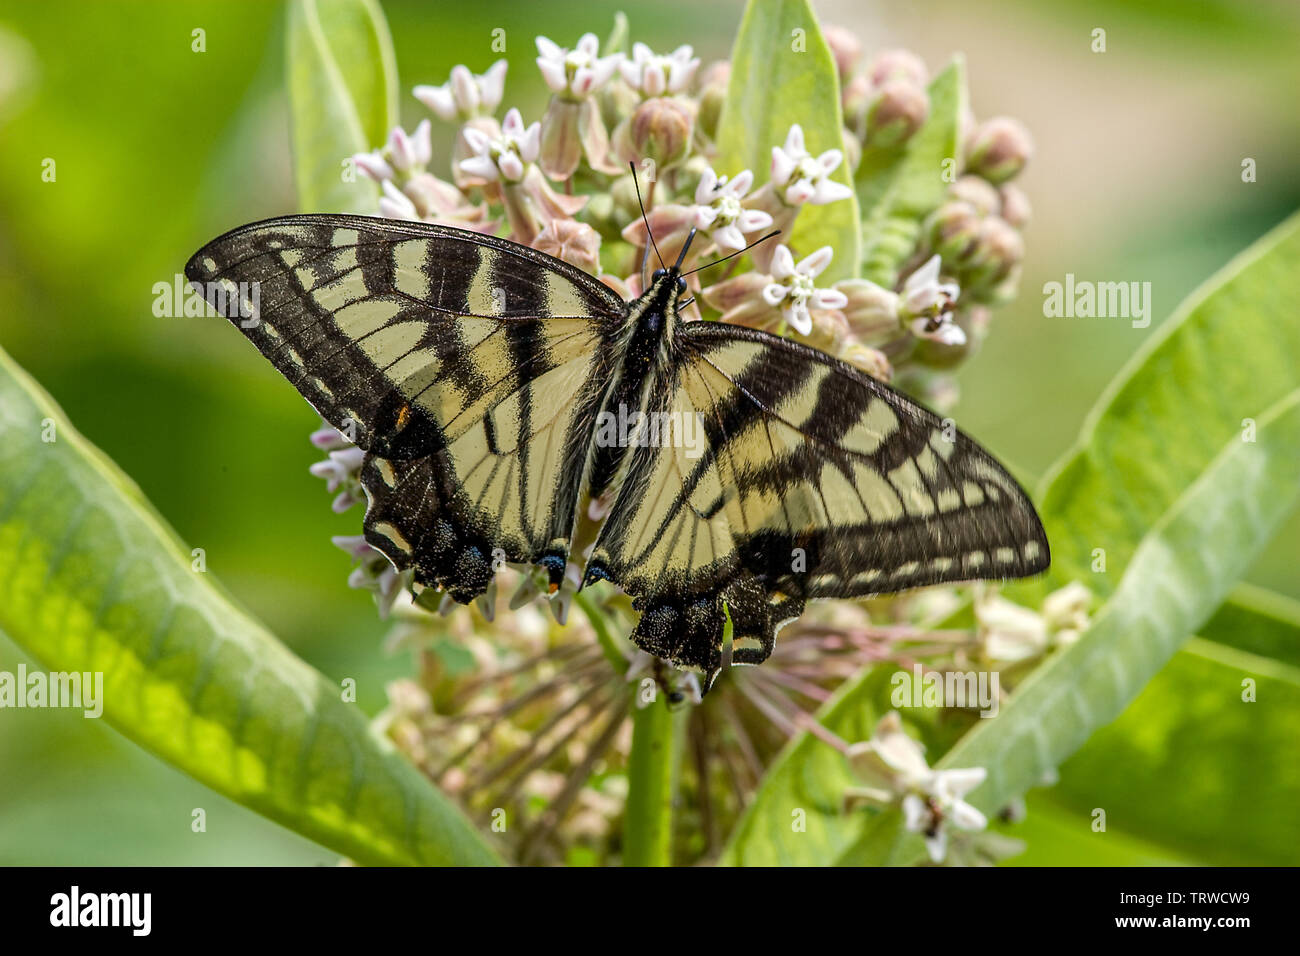 Orientale a coda di rondine di tiger butterfly Foto Stock